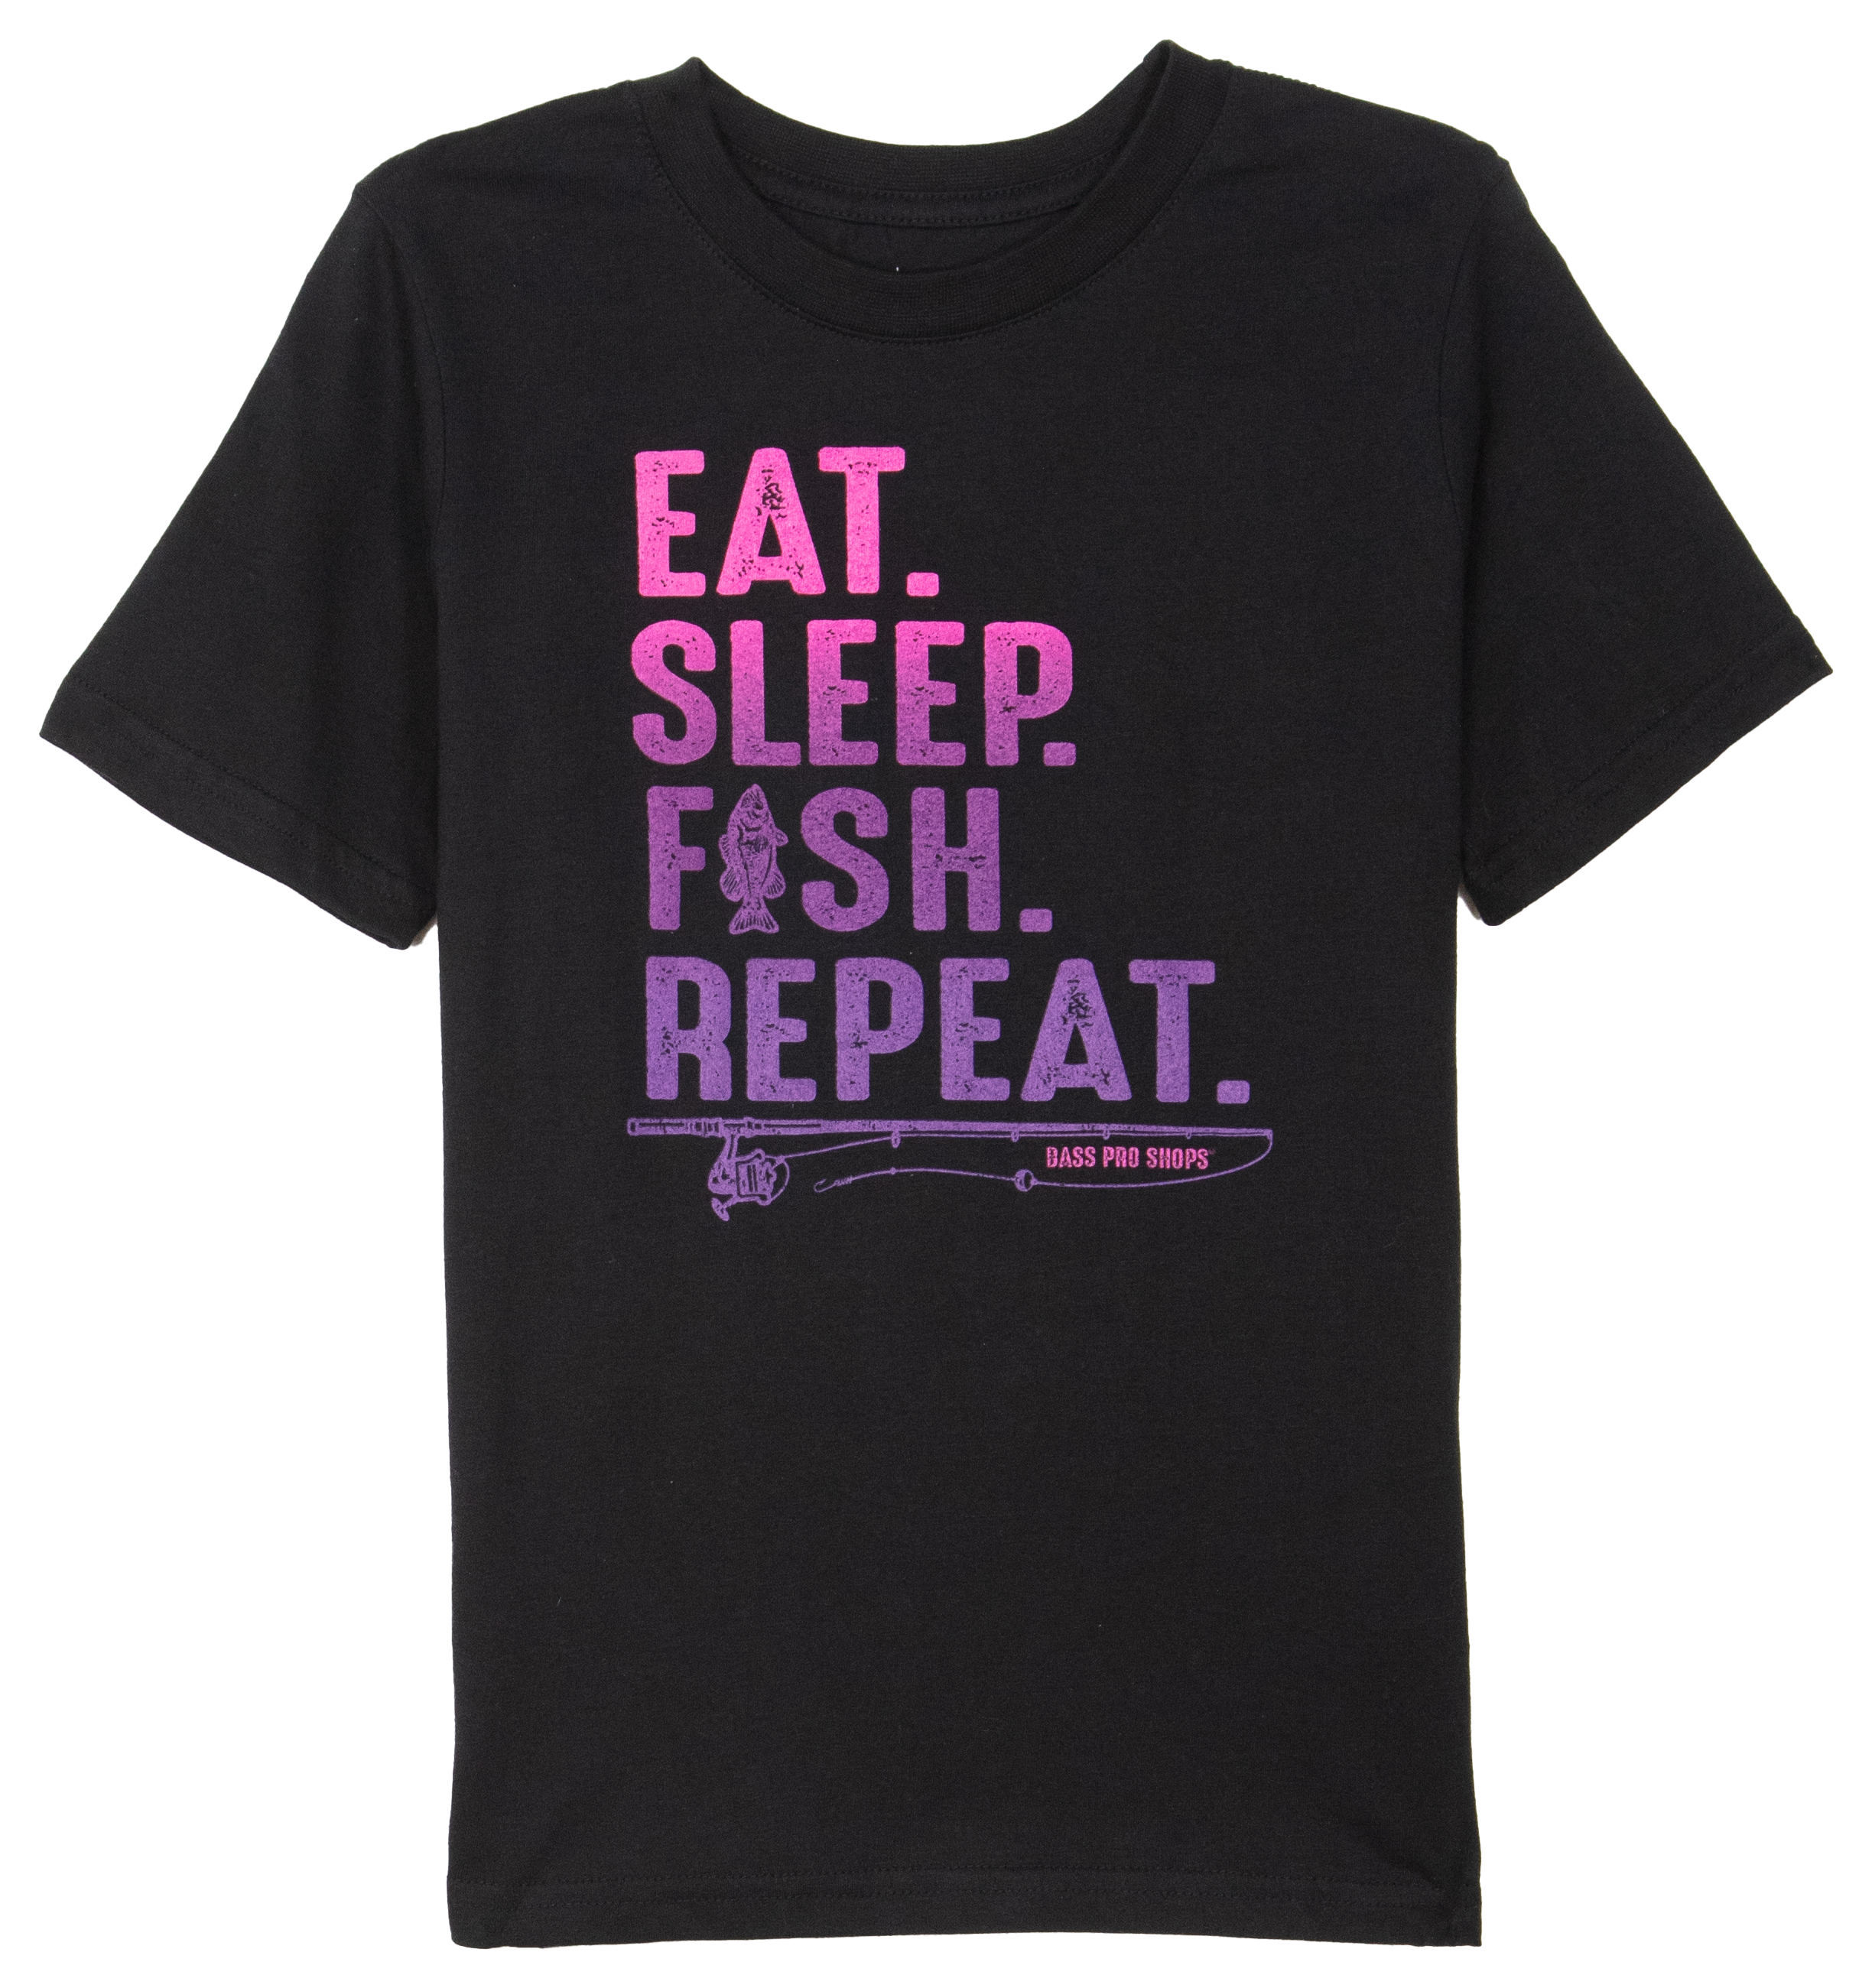 Bass Pro Shops Eat Sleep Fish Short-Sleeve T-Shirt for Girls - Black - XL